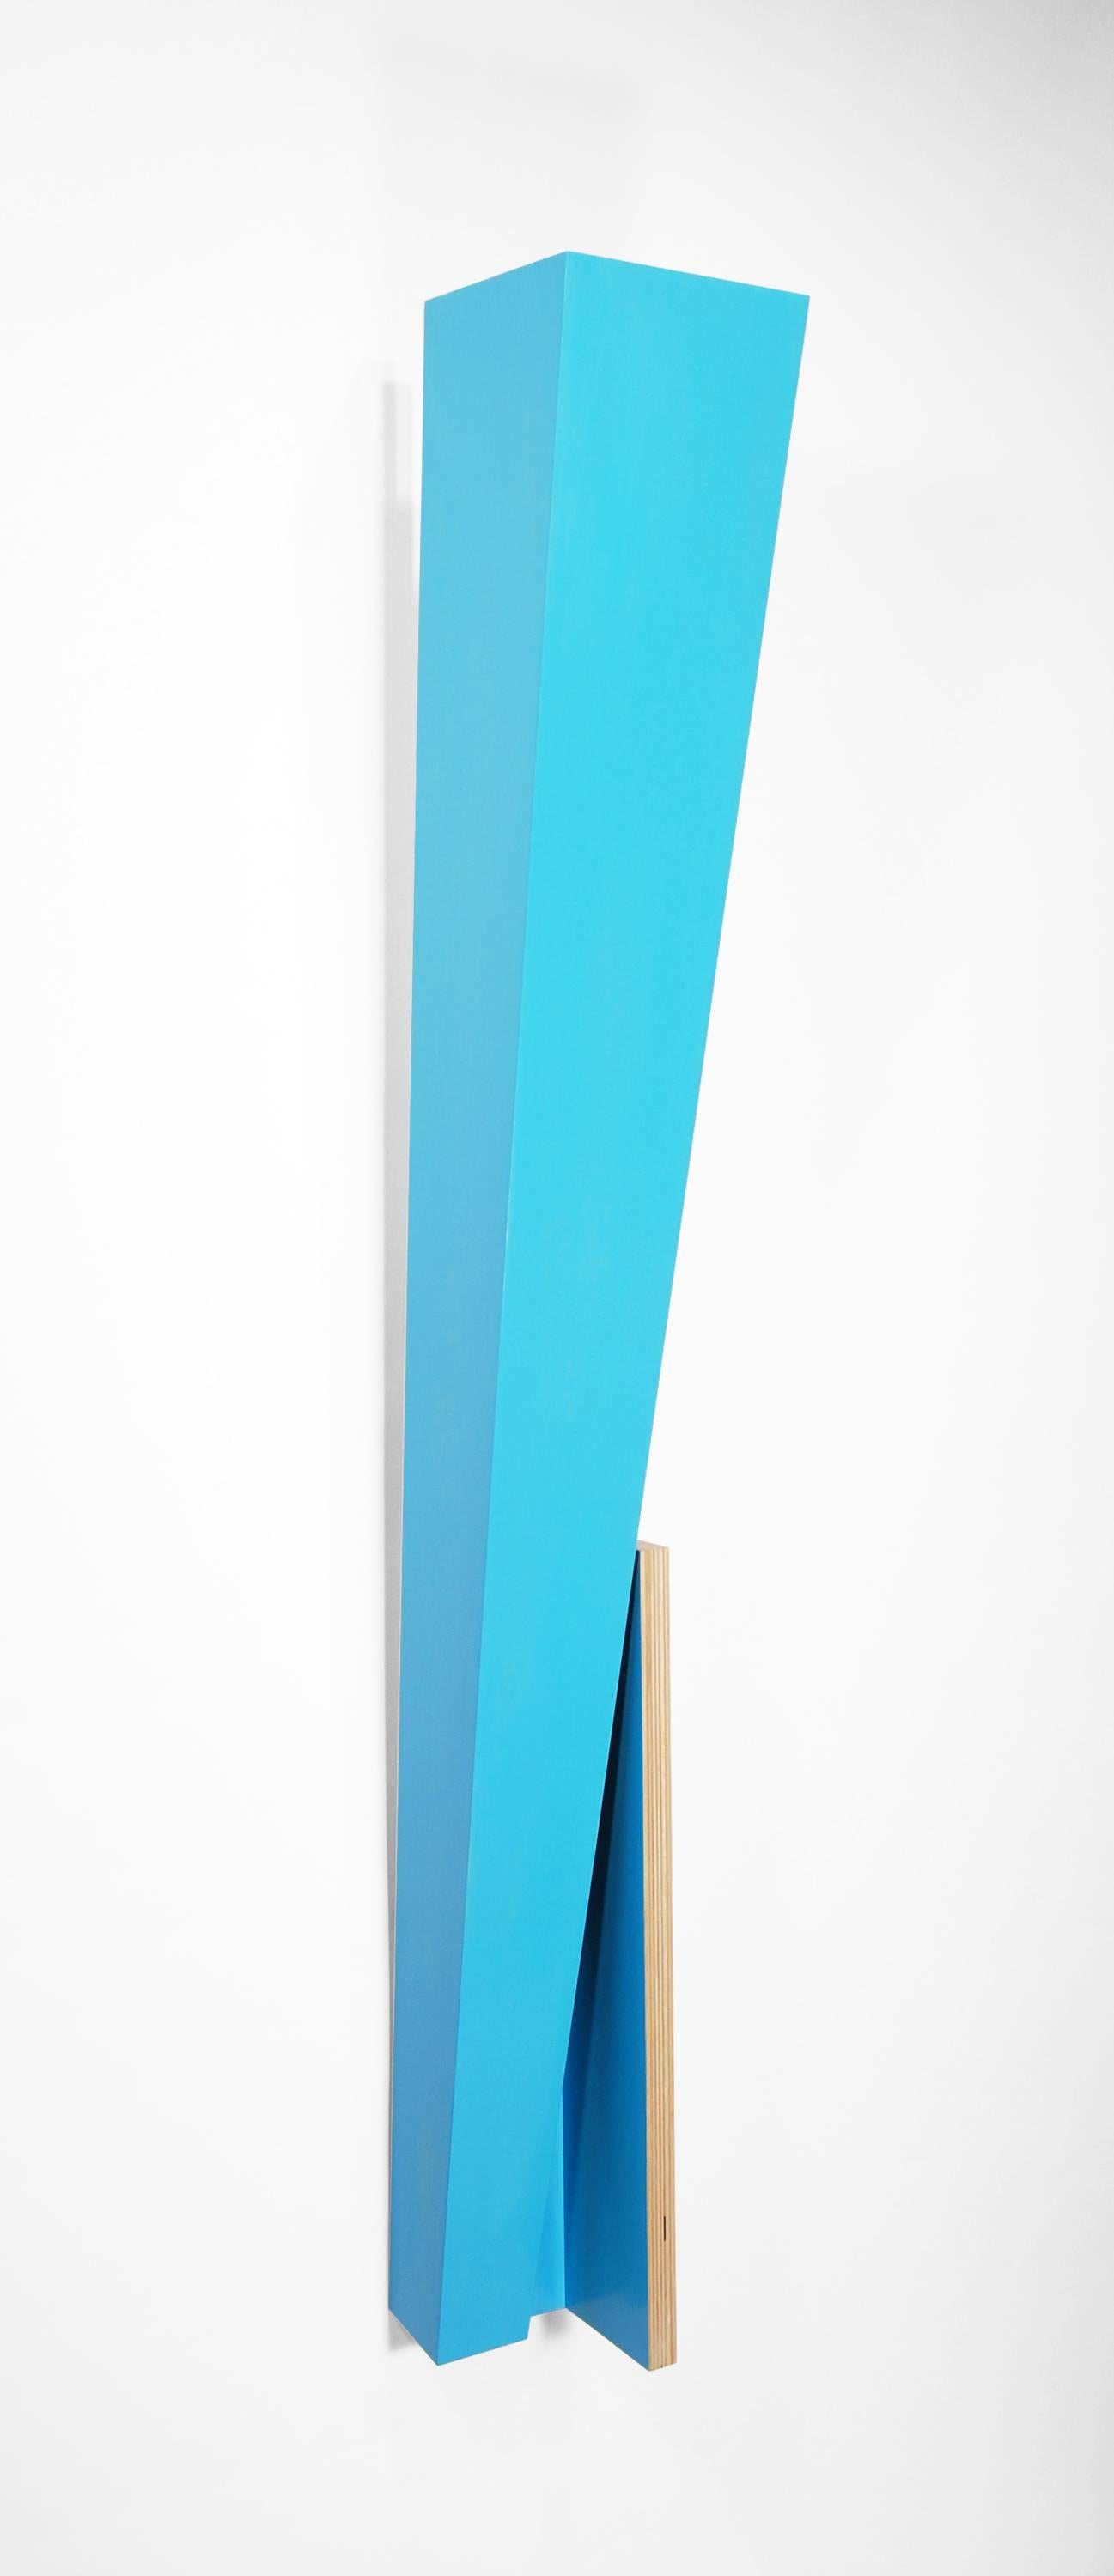 L'architecture et les objets fonctionnels constituent le vocabulaire de la sculpture de Richard Bottwin.  Les surfaces en contreplaqué, stratifiées avec des placages de bois ou peintes avec des couleurs acryliques, sont configurées pour révéler des